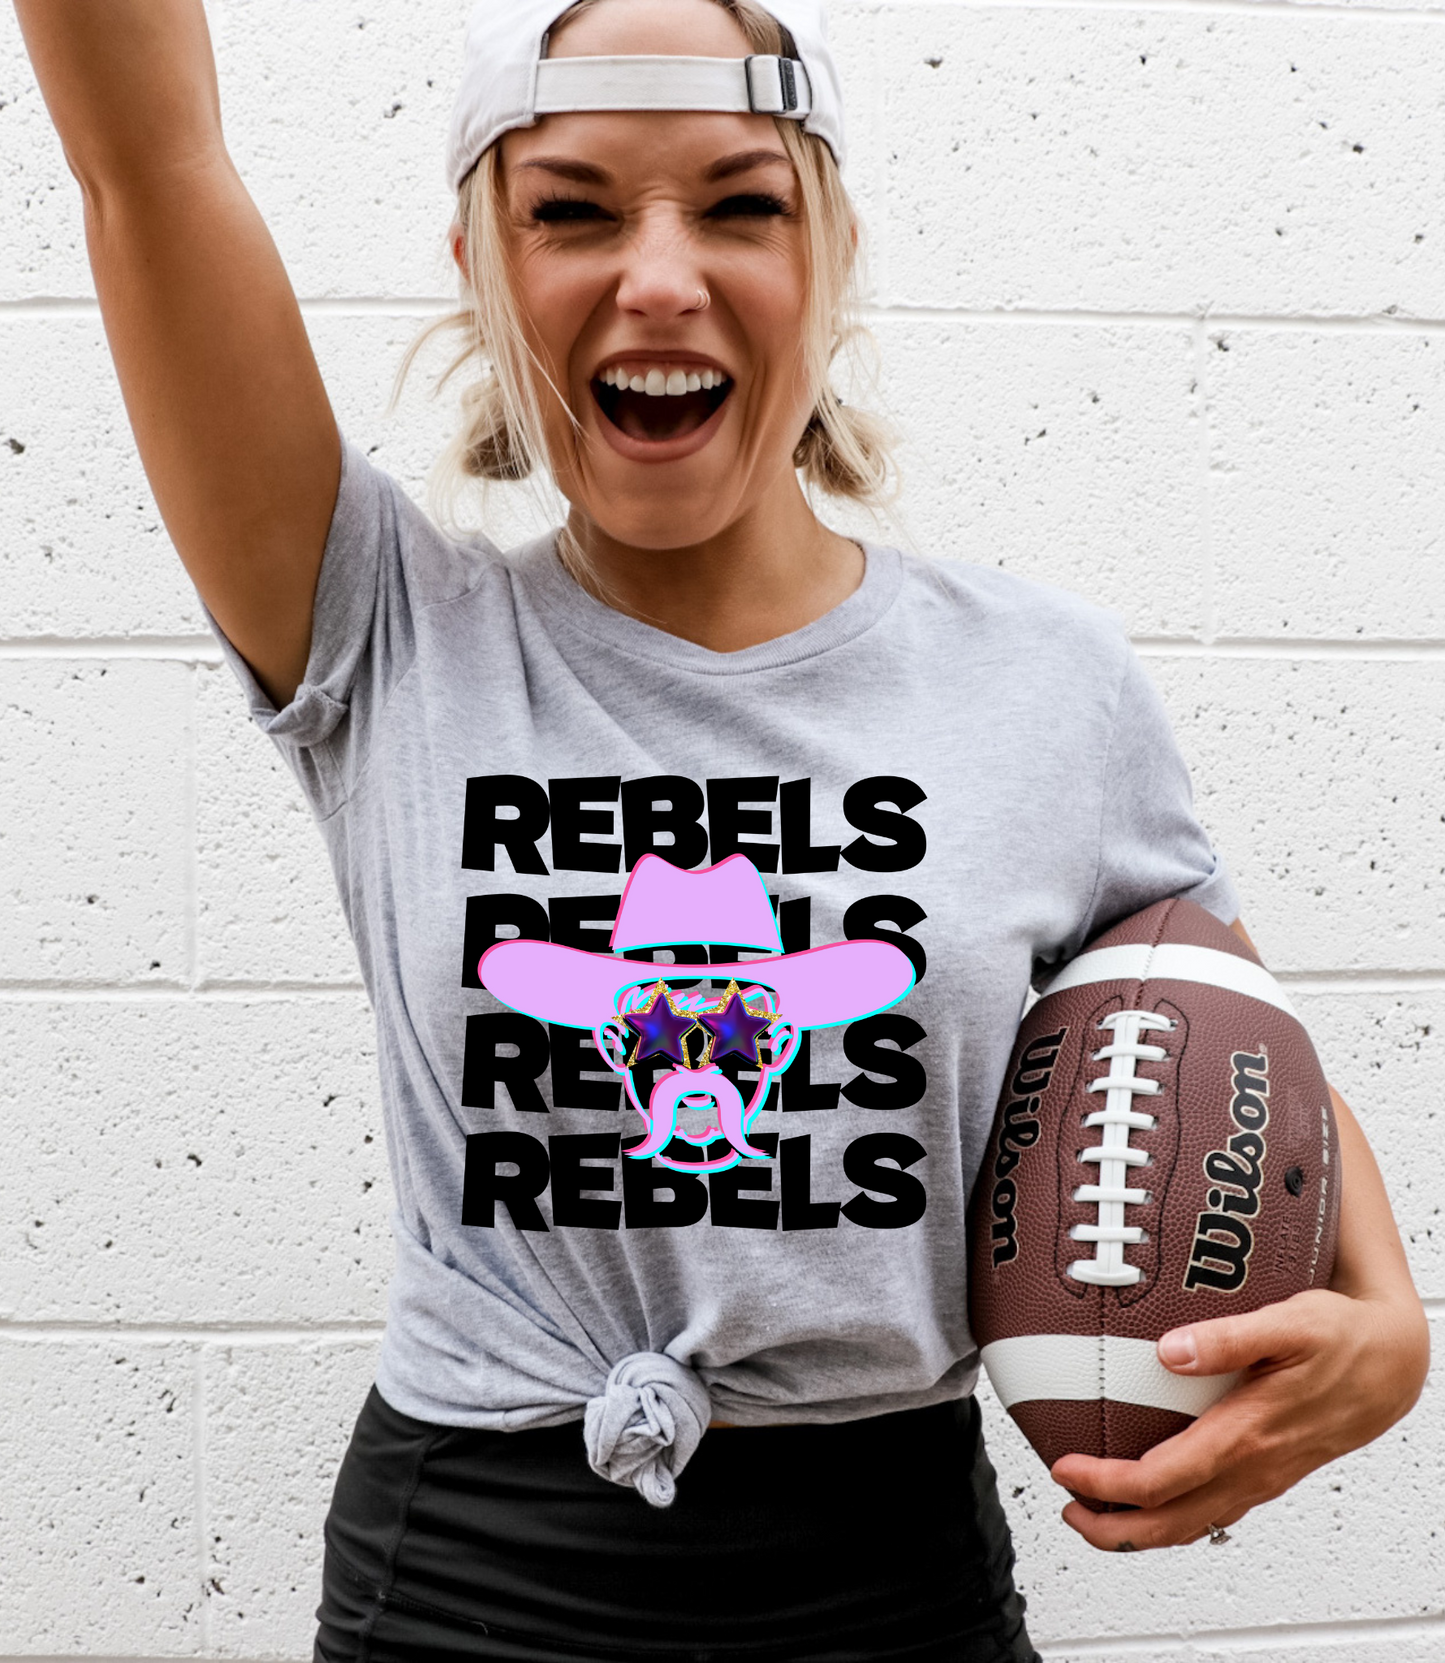 Rebels Rebels Rebels